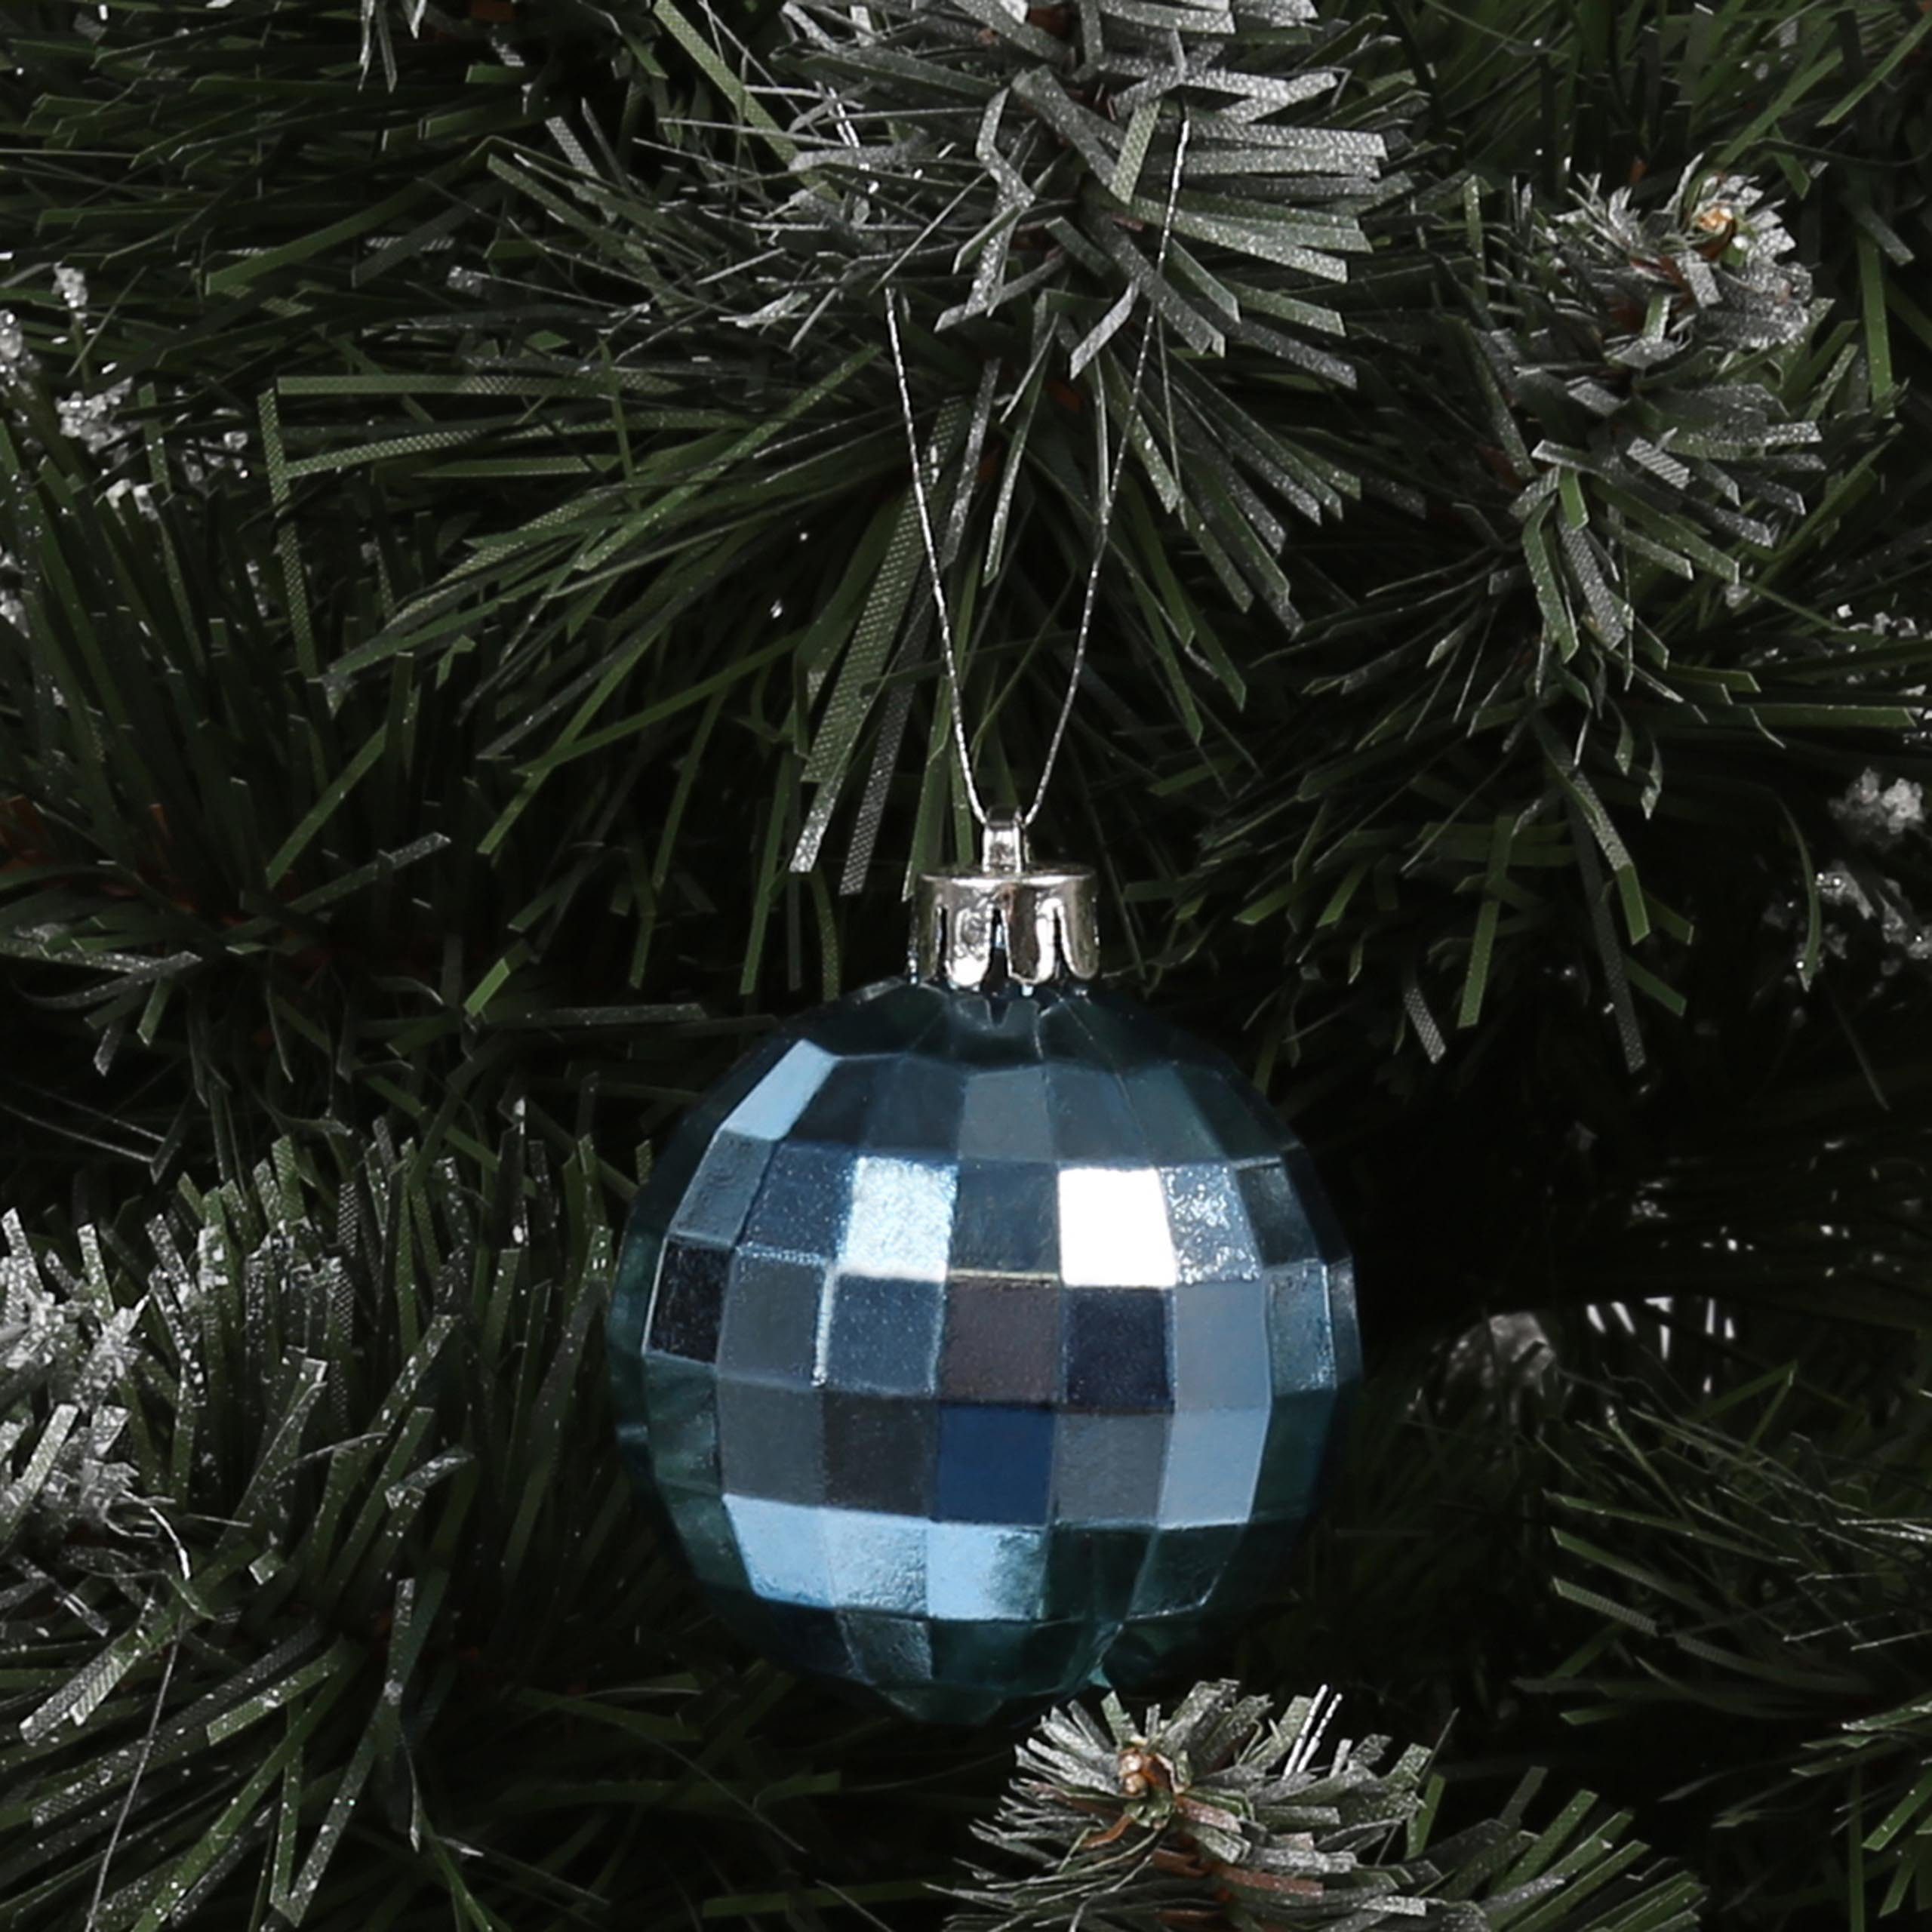 Stück 24 Christbaumkugeln aus Blaue Kunststoff 5cm, Sarcia.eu Weihnachtsbaumkugel